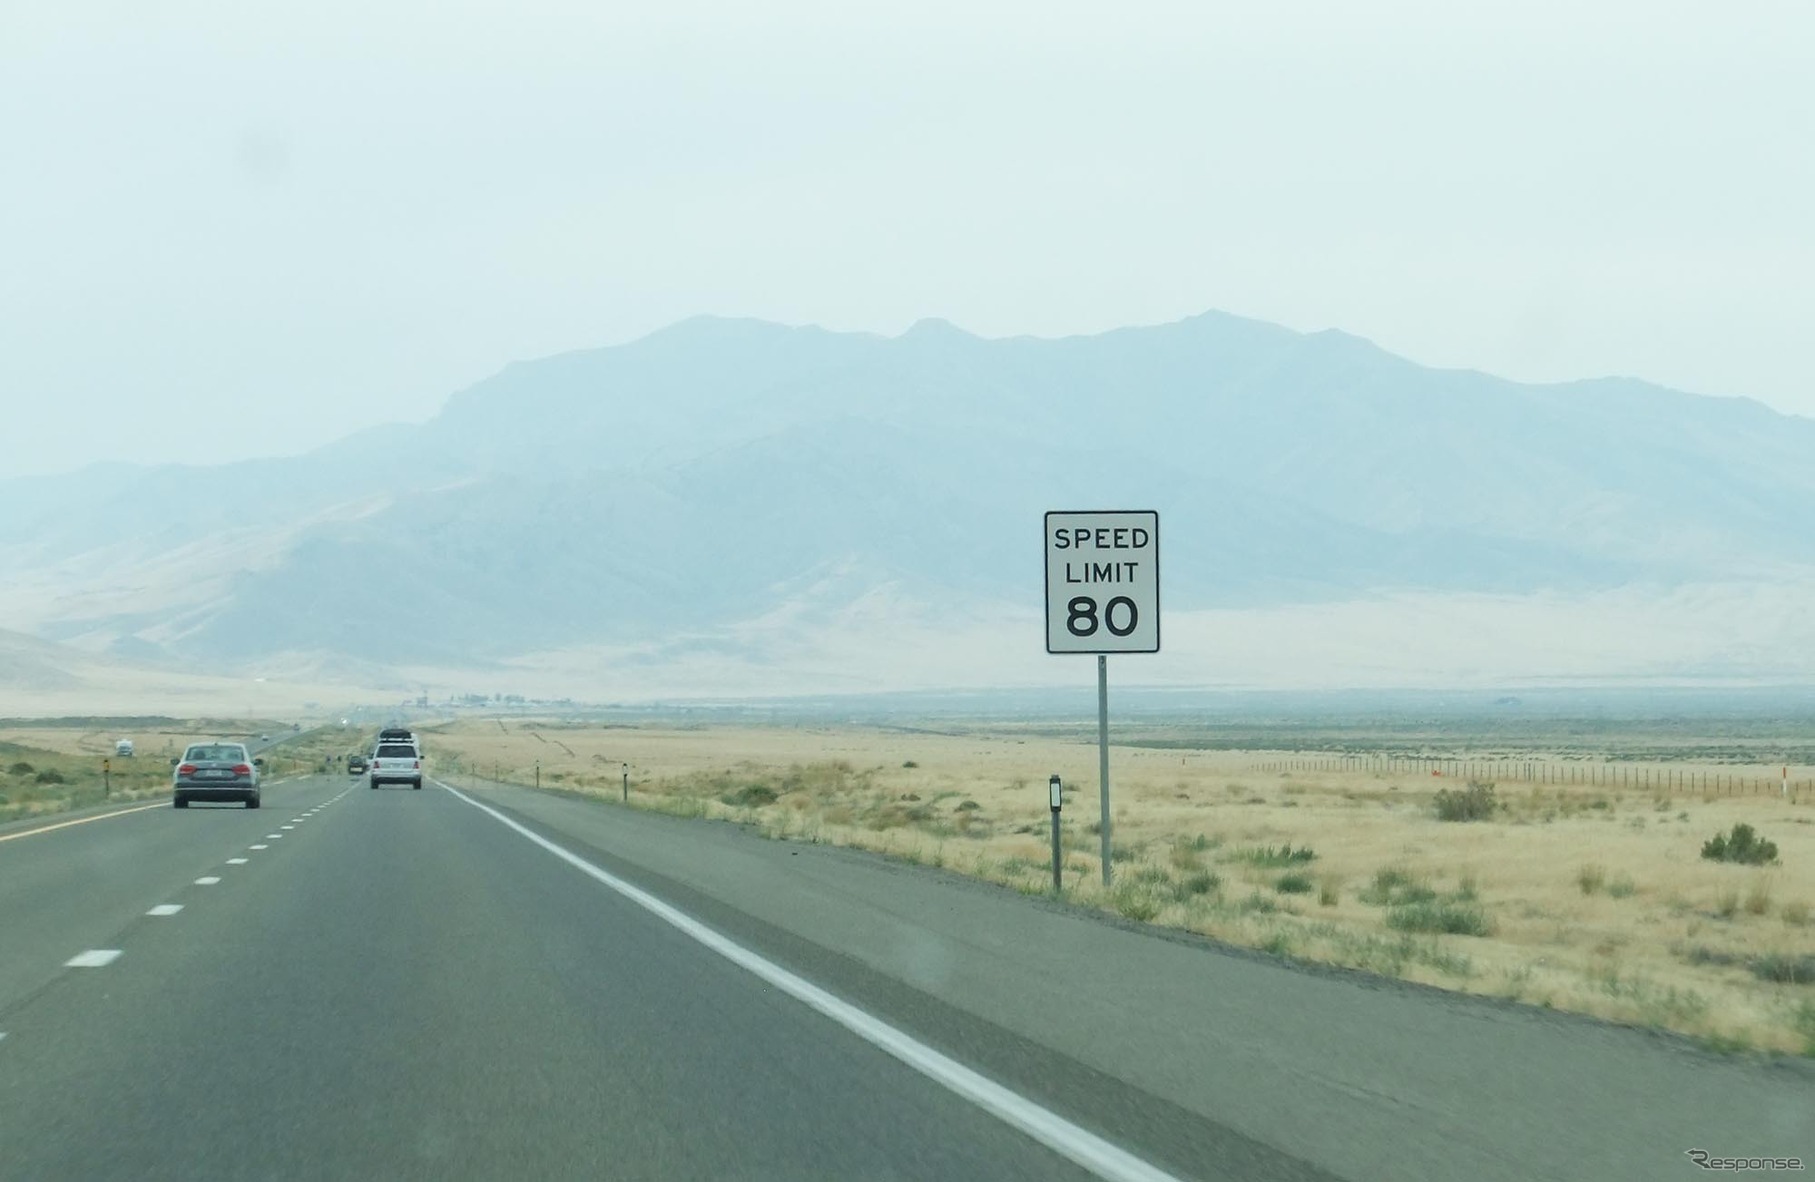 州際高速道路80号線に立つ80マイル制限の標識。